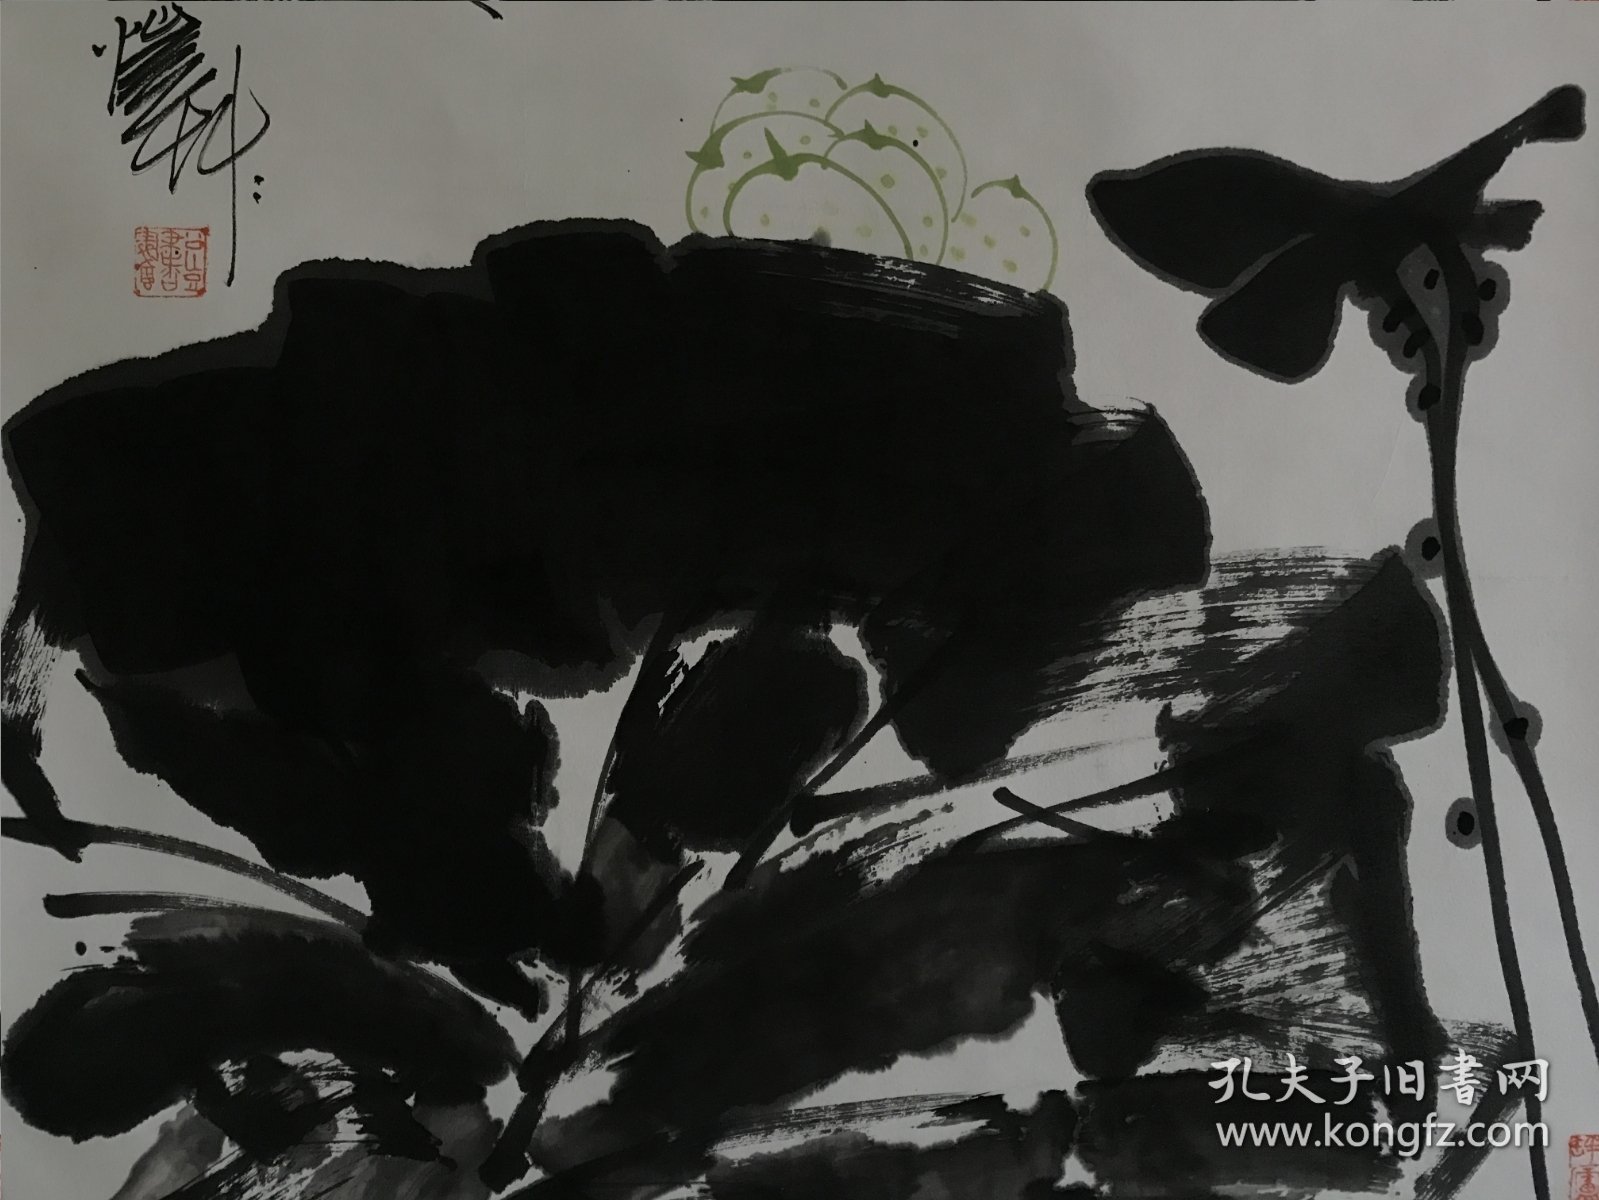 【 潘公凯 】（1947年1月-），中国美术家协会副主席，国务院新闻办《中国网》专栏作家等。 潘 公 凯曾多次在纽约、香港、巴黎联合国教科文总部等地举办大型个人画展，在国内外享有很高声誉，后被评为“有特殊贡献知识分子”，著有作品《潘 天 寿书画集》等。